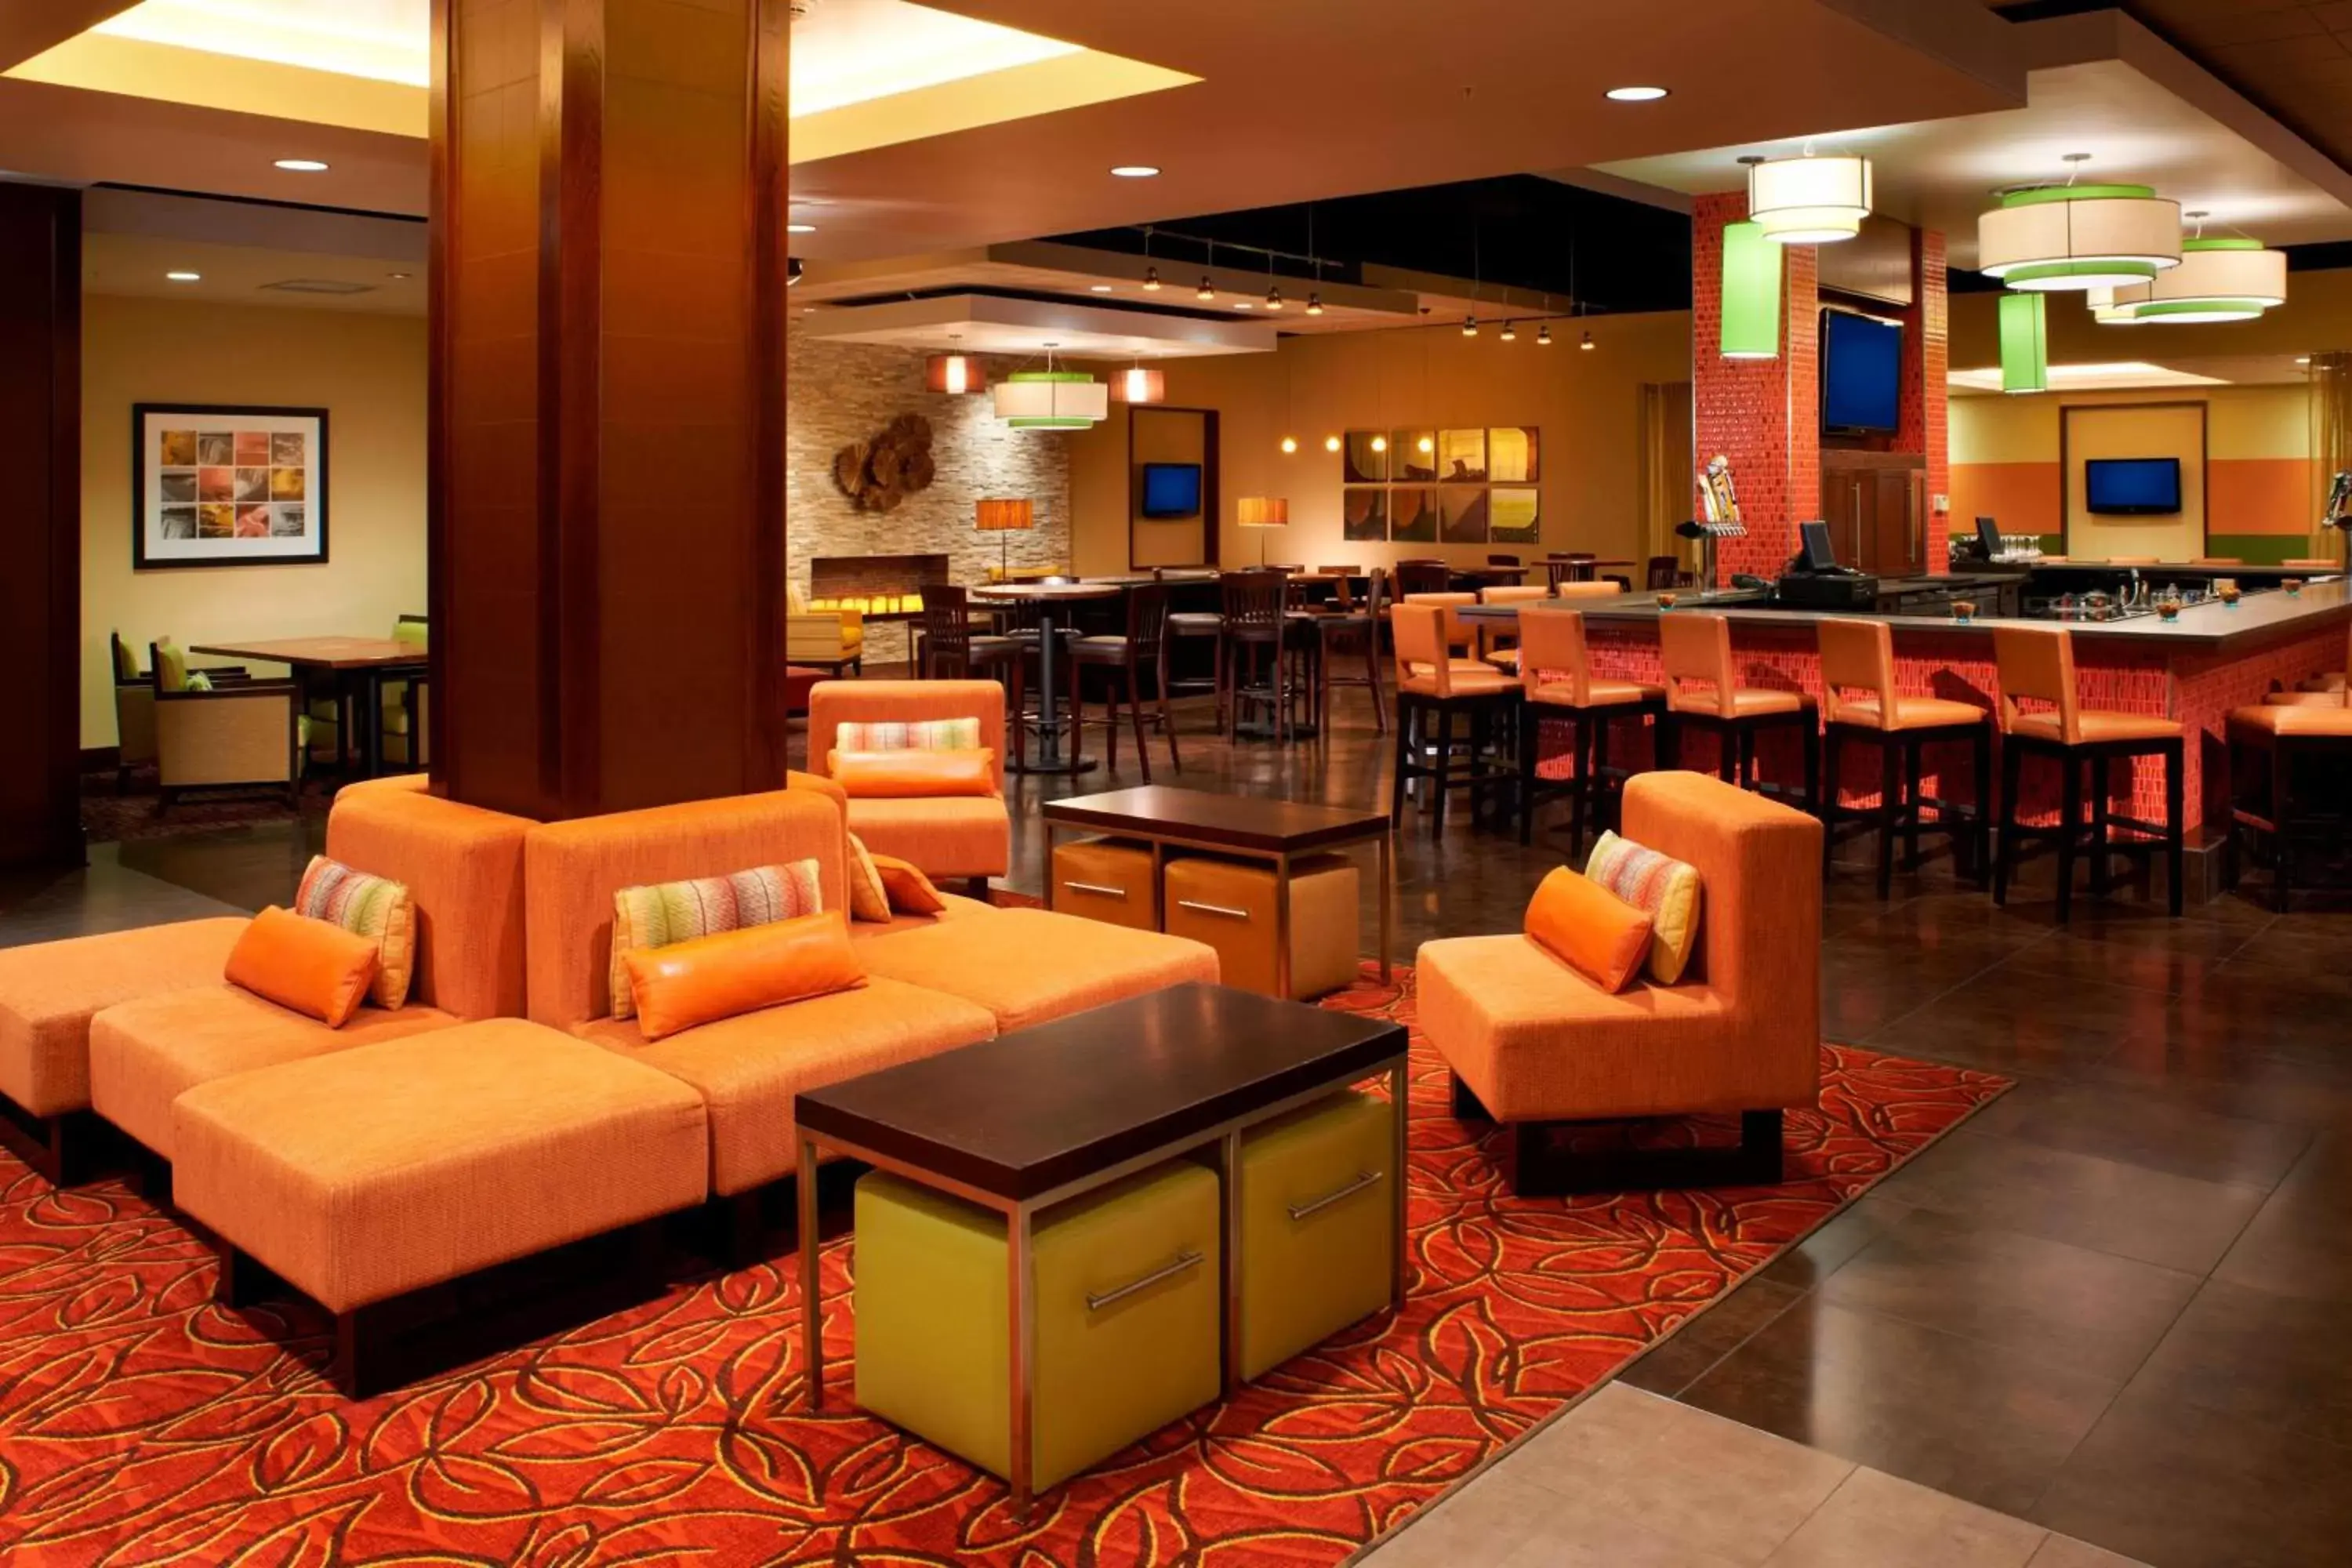 Lobby or reception in Buffalo Marriott Niagara